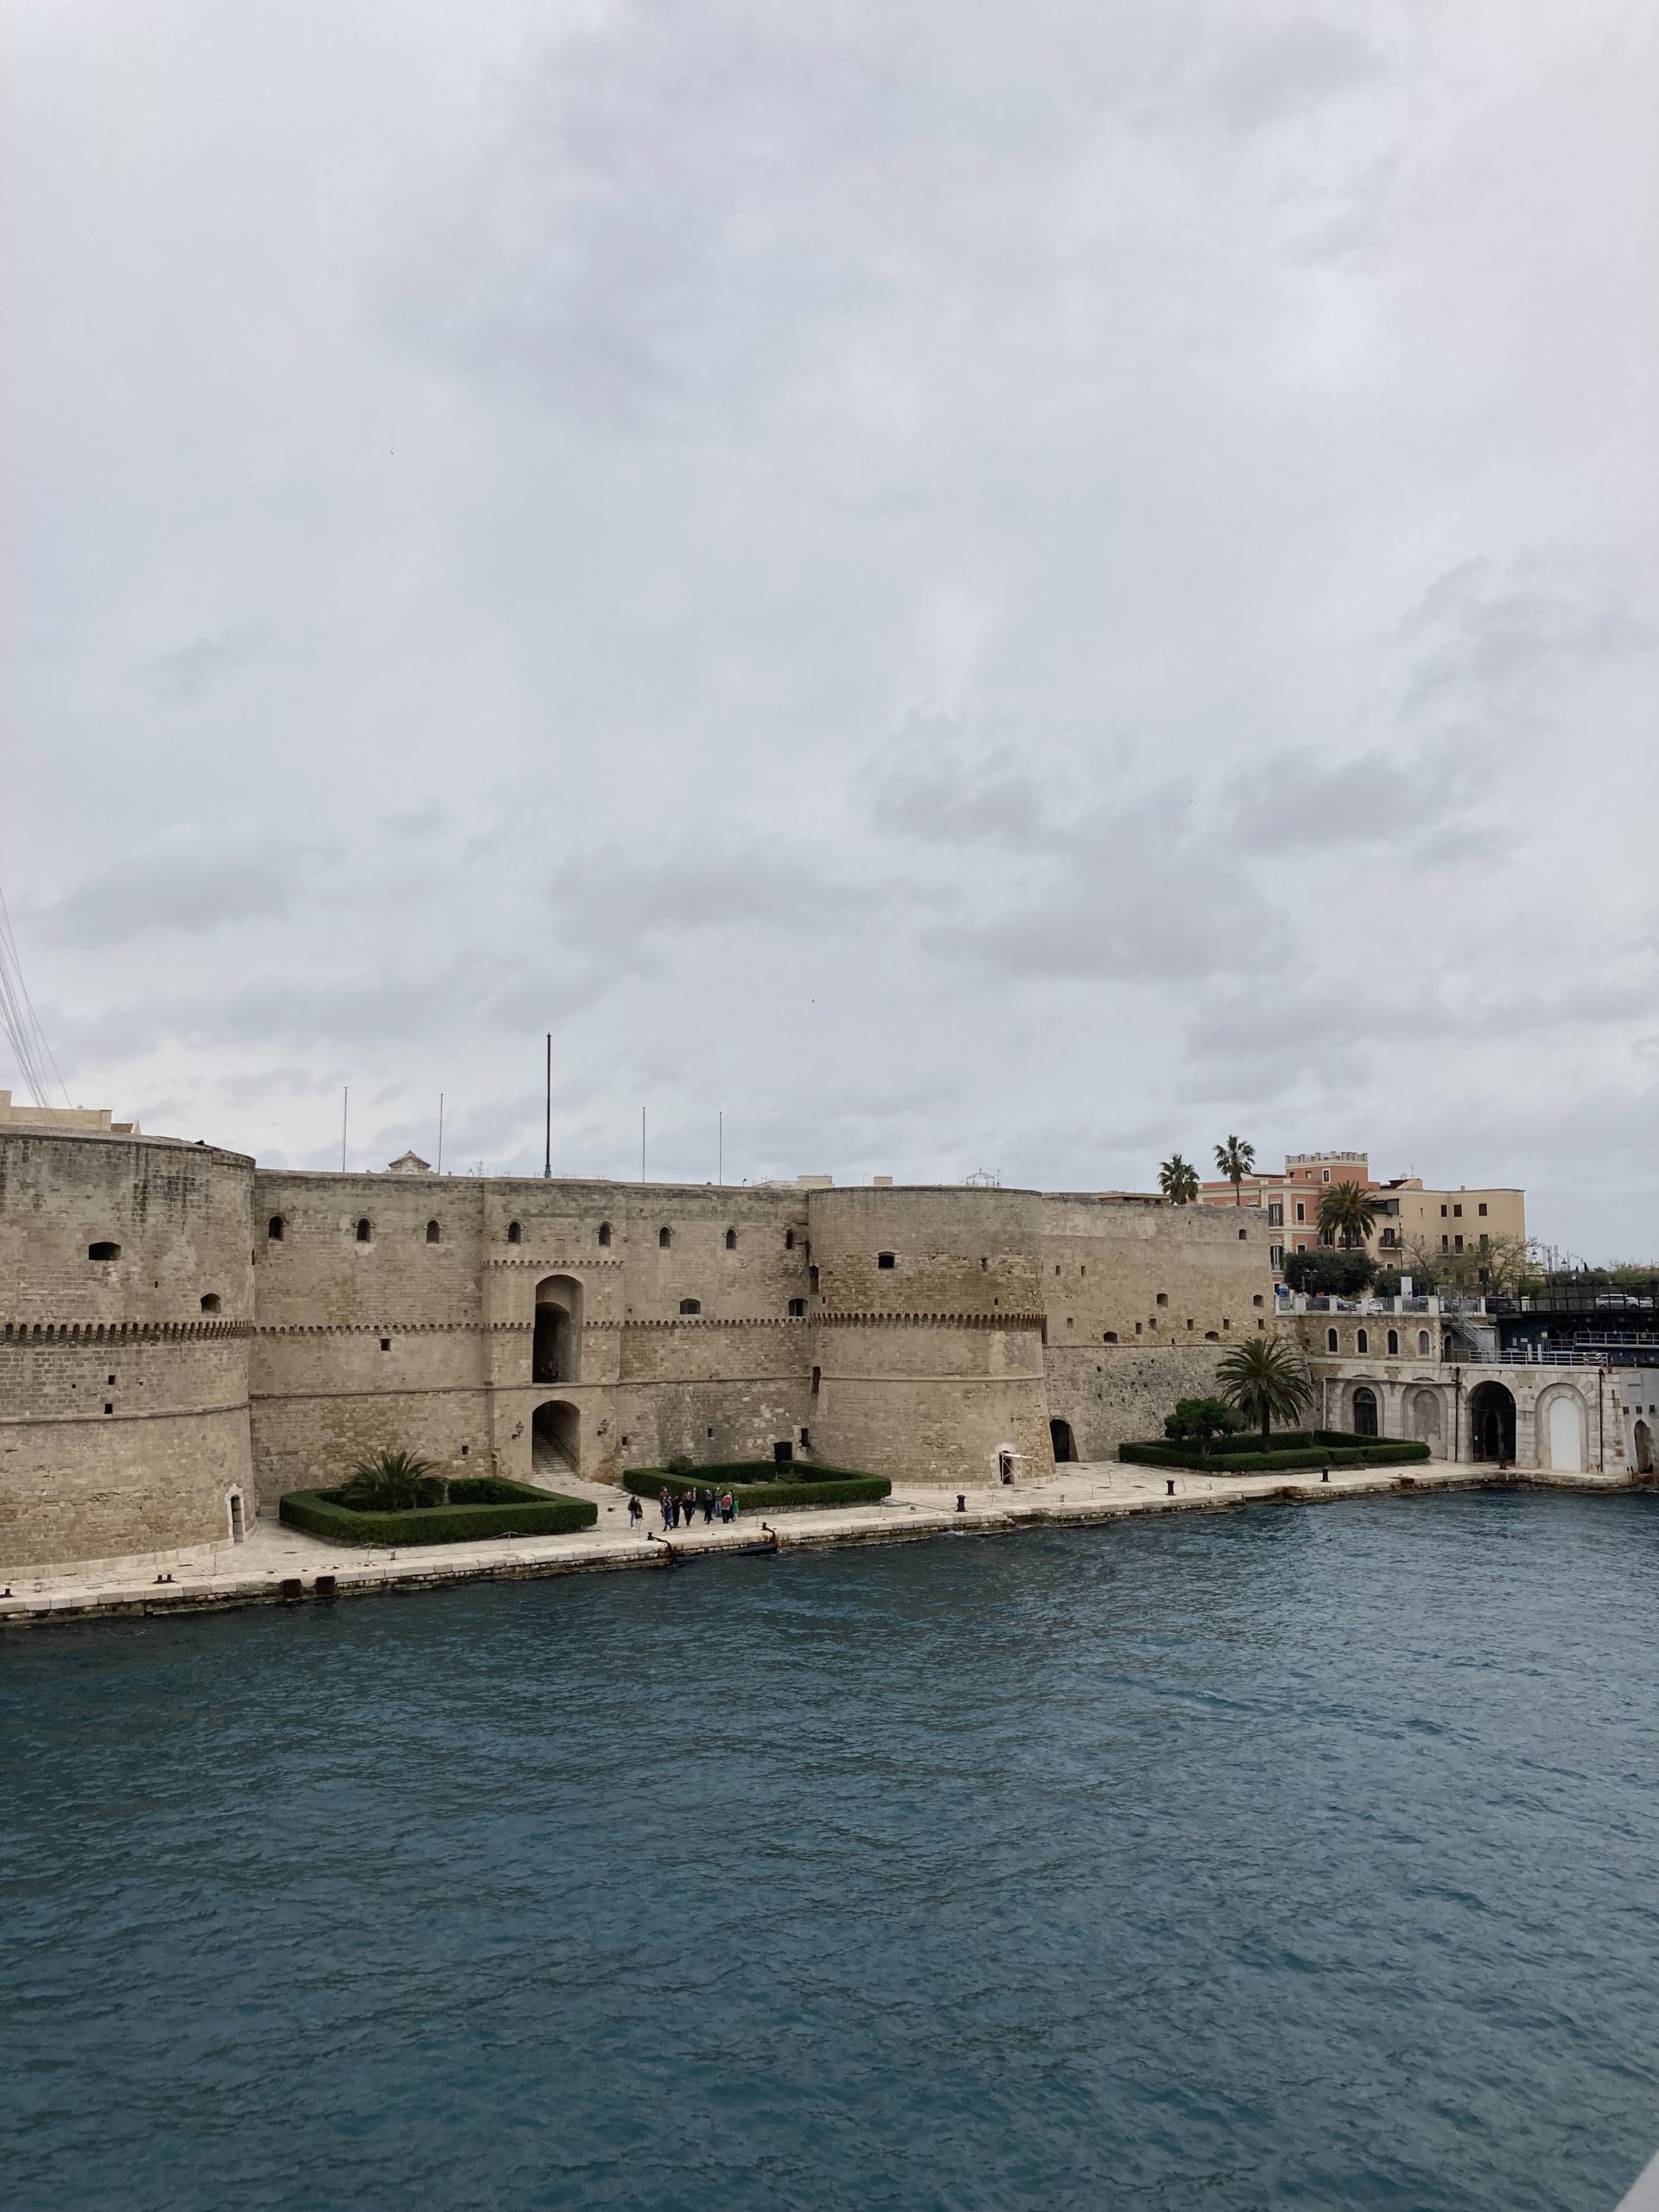 Chateau Taranto